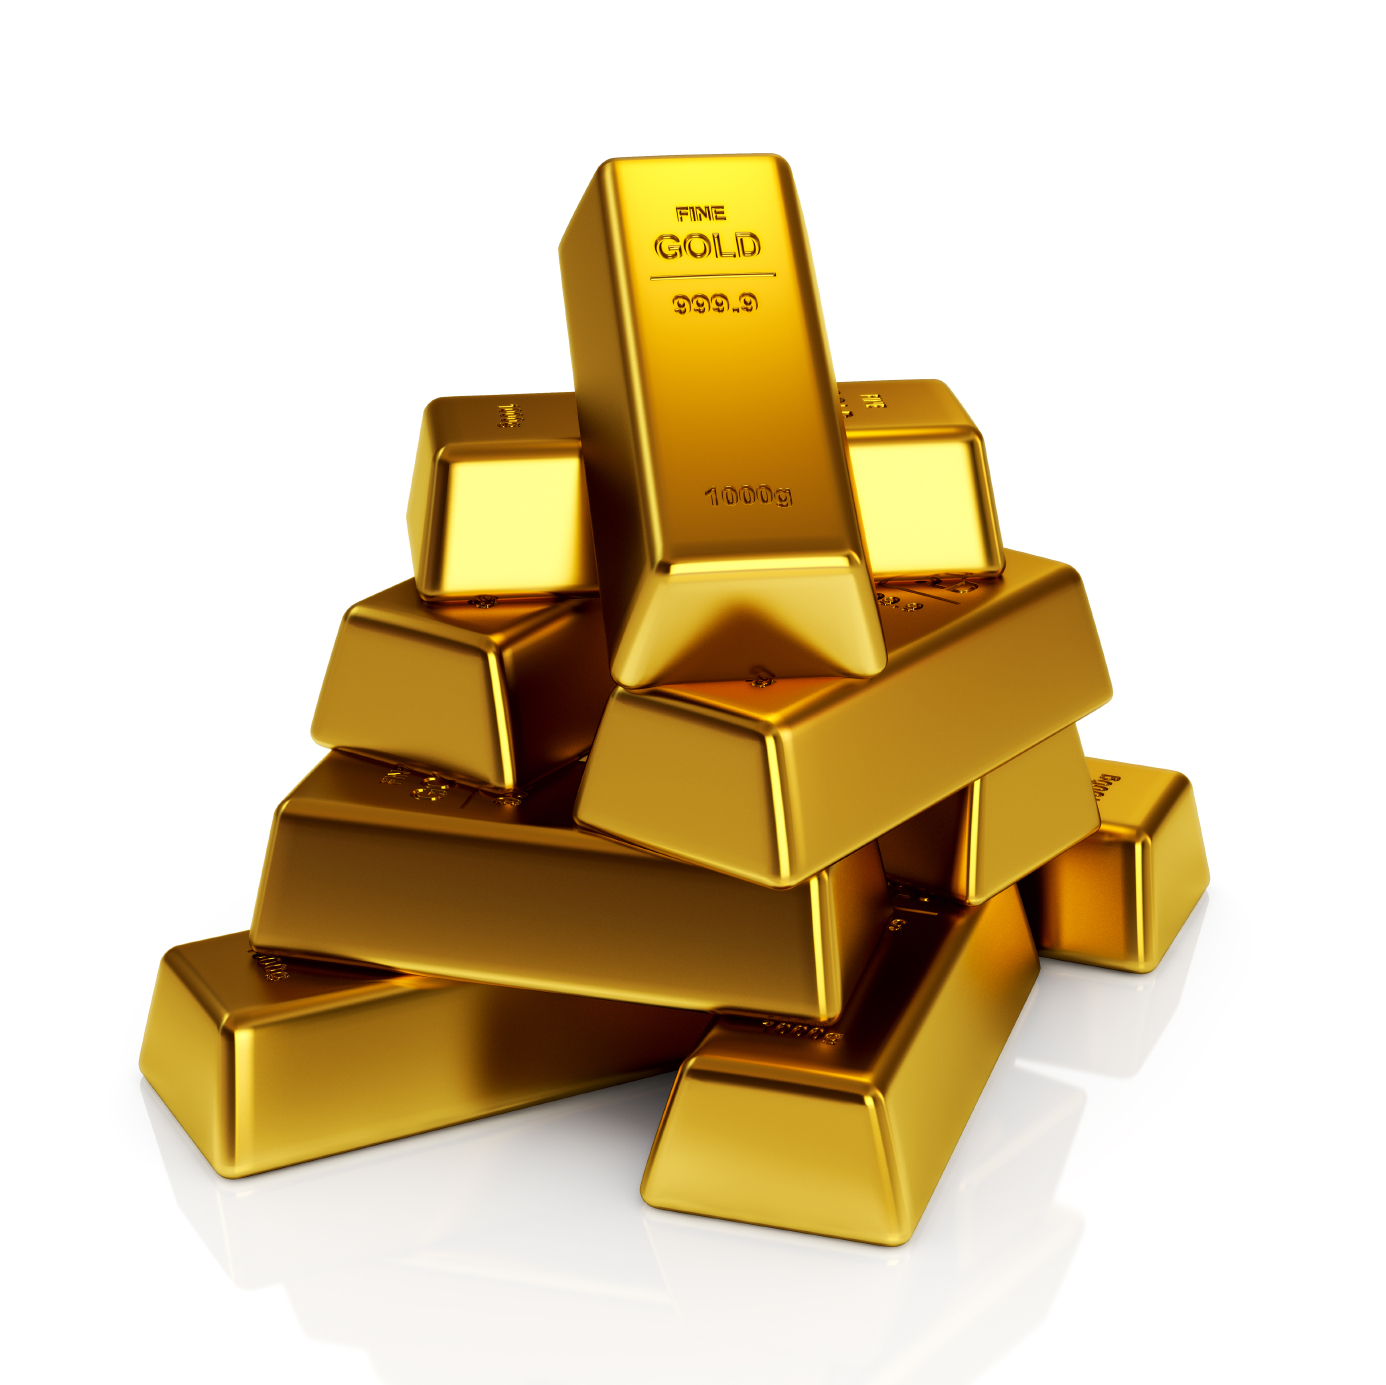 El precio del oro podría romper récords en us$ 2000 dice el Citi